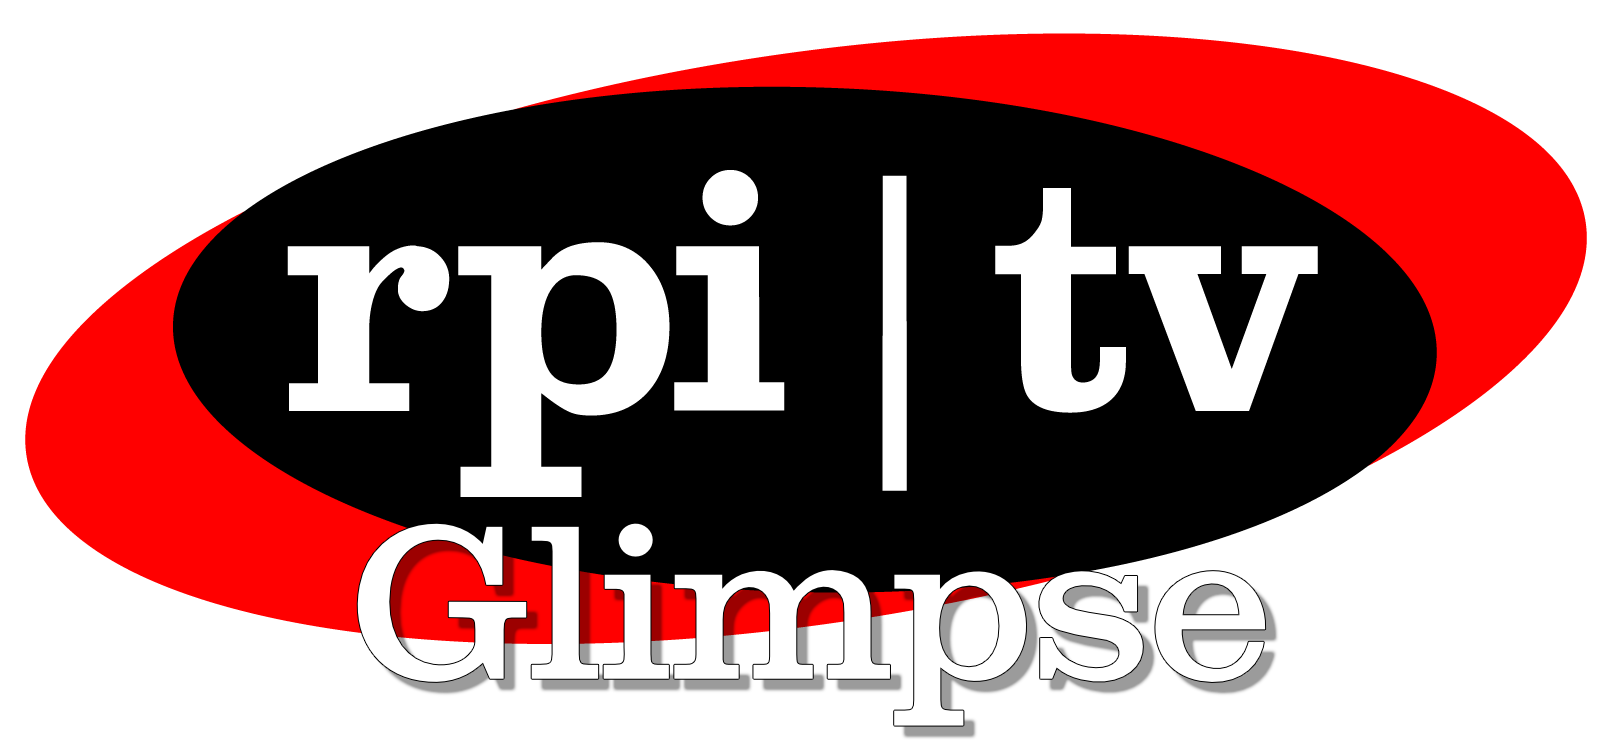 RPI TV Glimpse logo